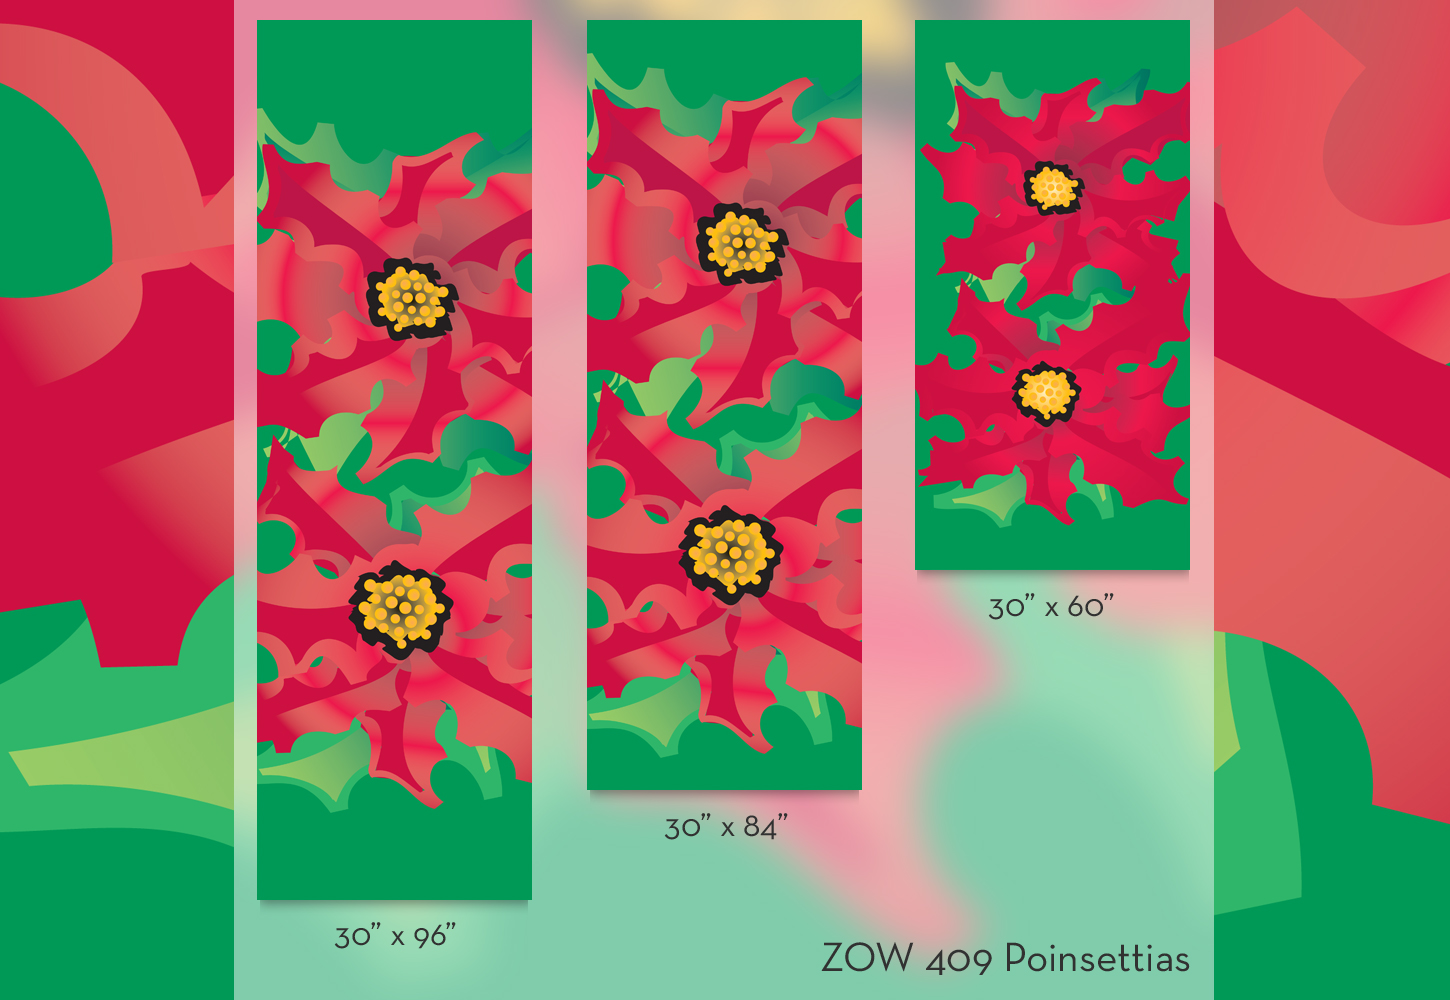 ZOW 409 Poinsettias